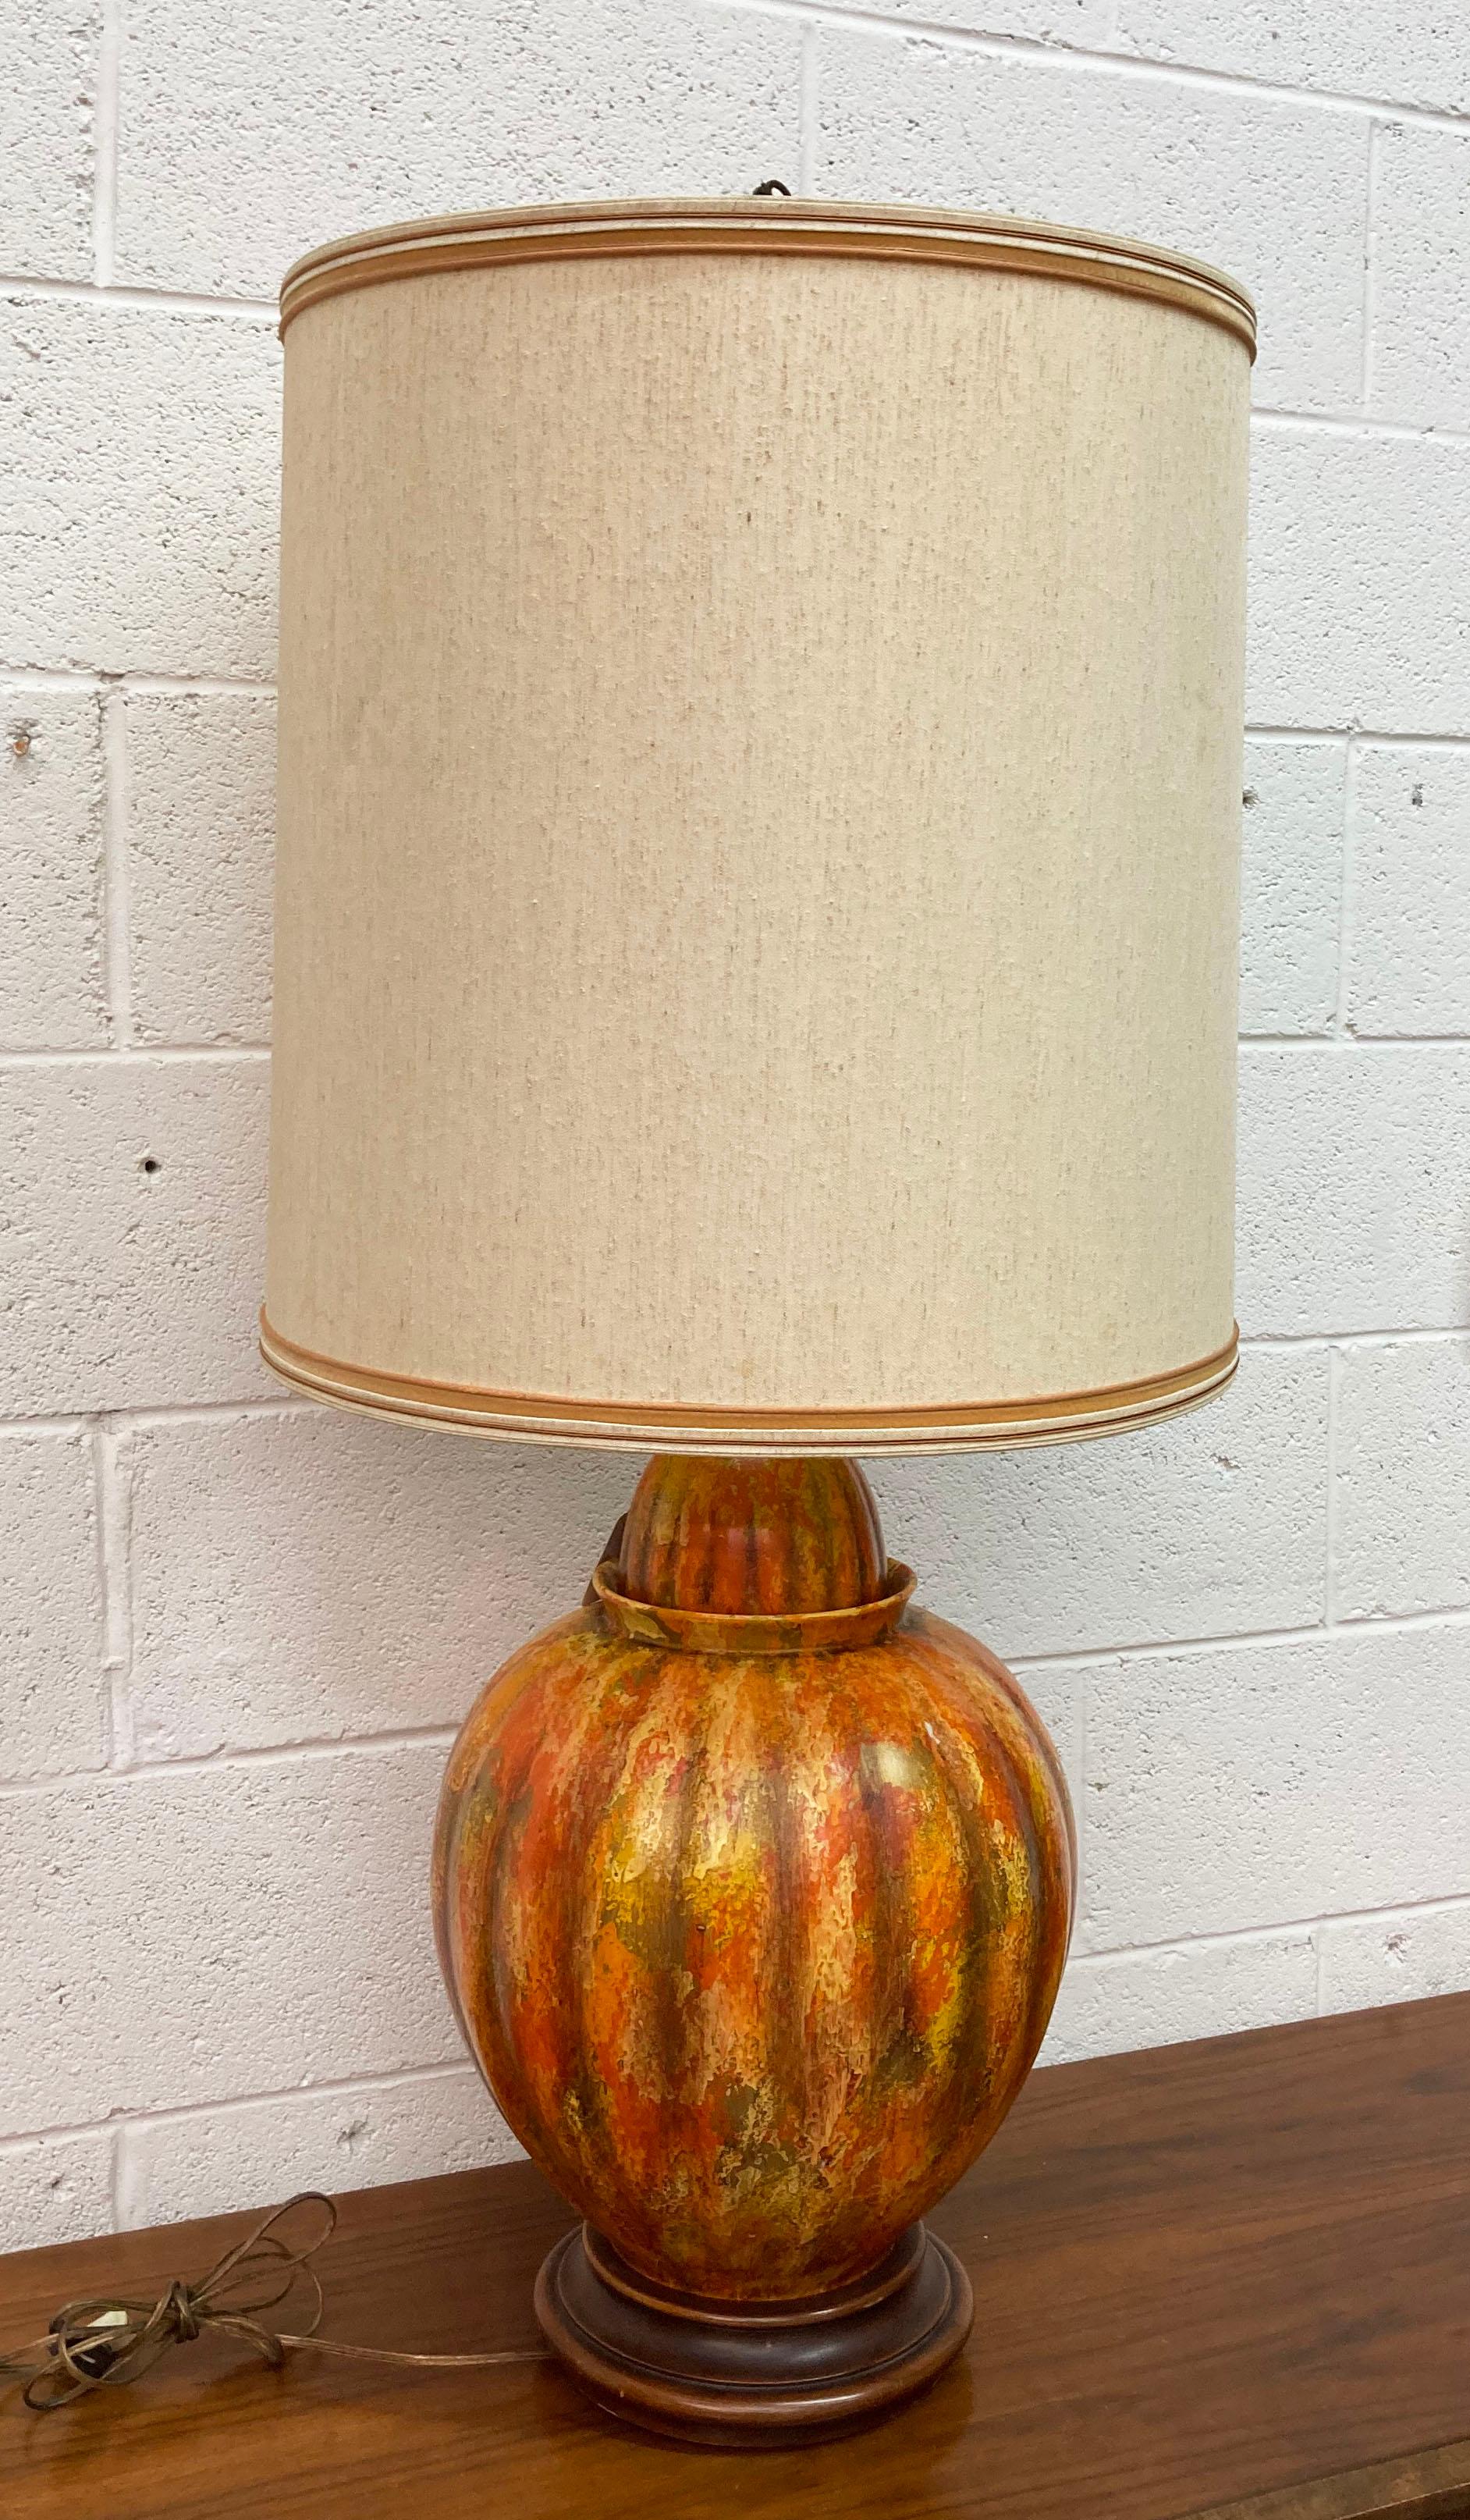 1950s Lamp Mid Century Brown Orange Leaf Retro Vintage Textured Table Lamp